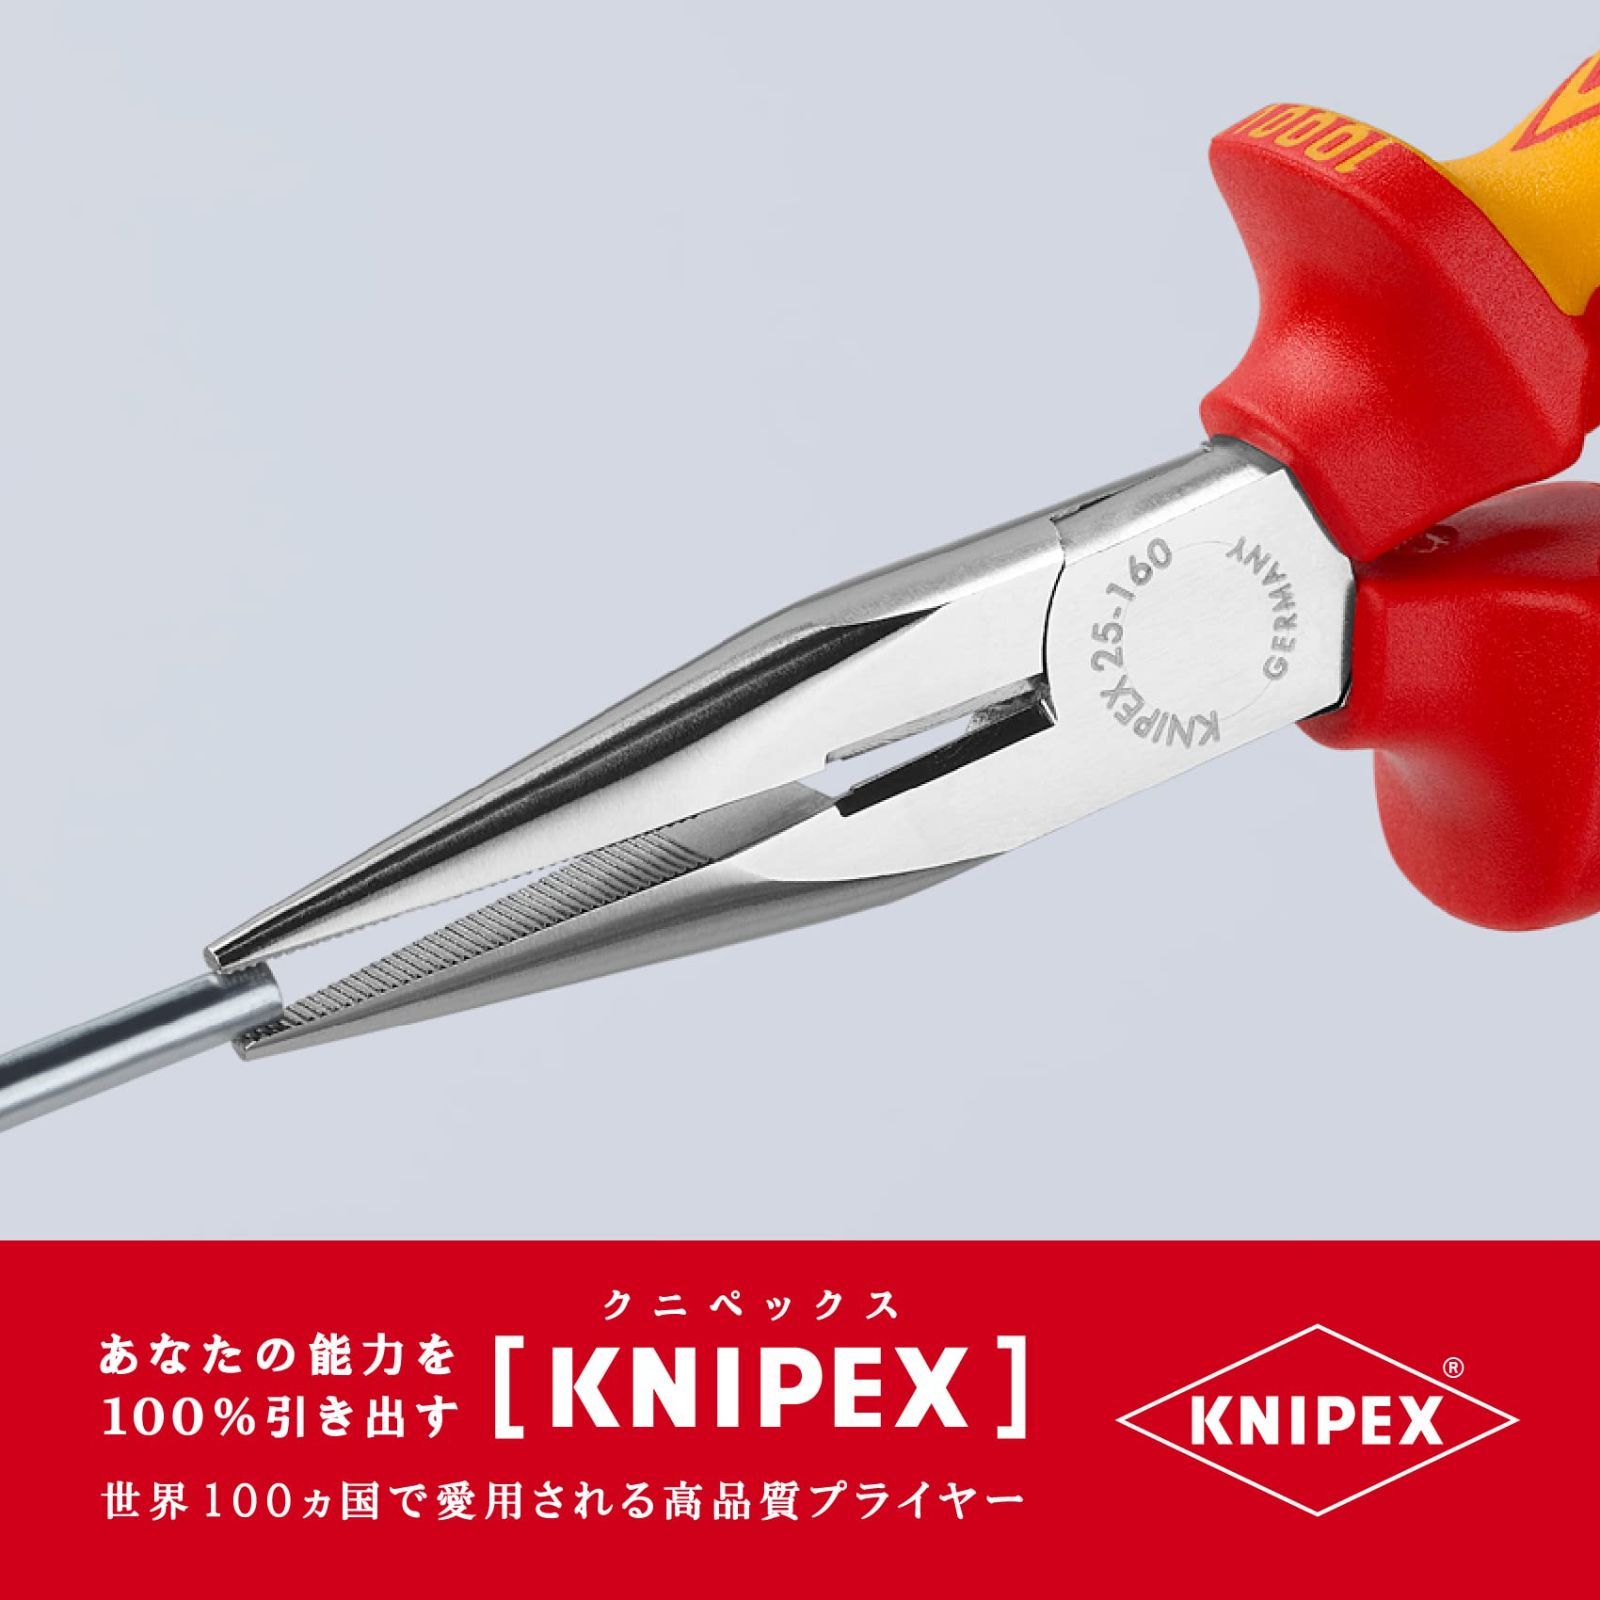 クニペックス KNIPEX 2206-160 絶縁丸ペンチ 1000V - カッター